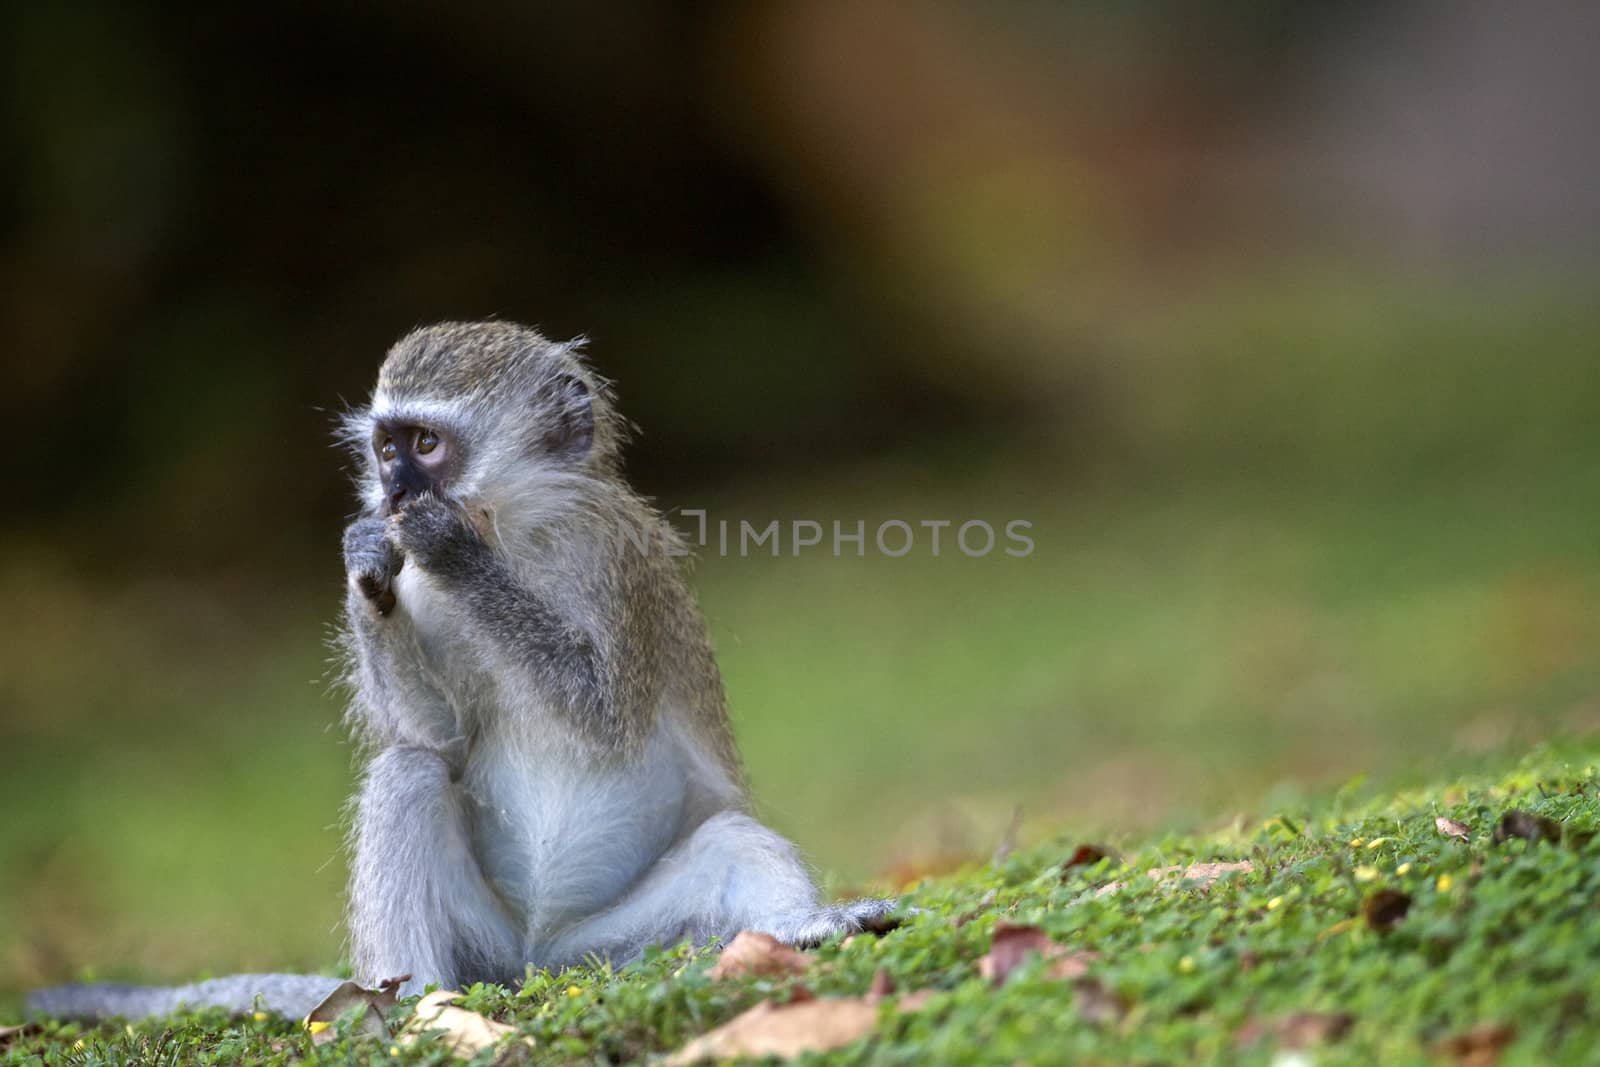 Baby monkey by instinia